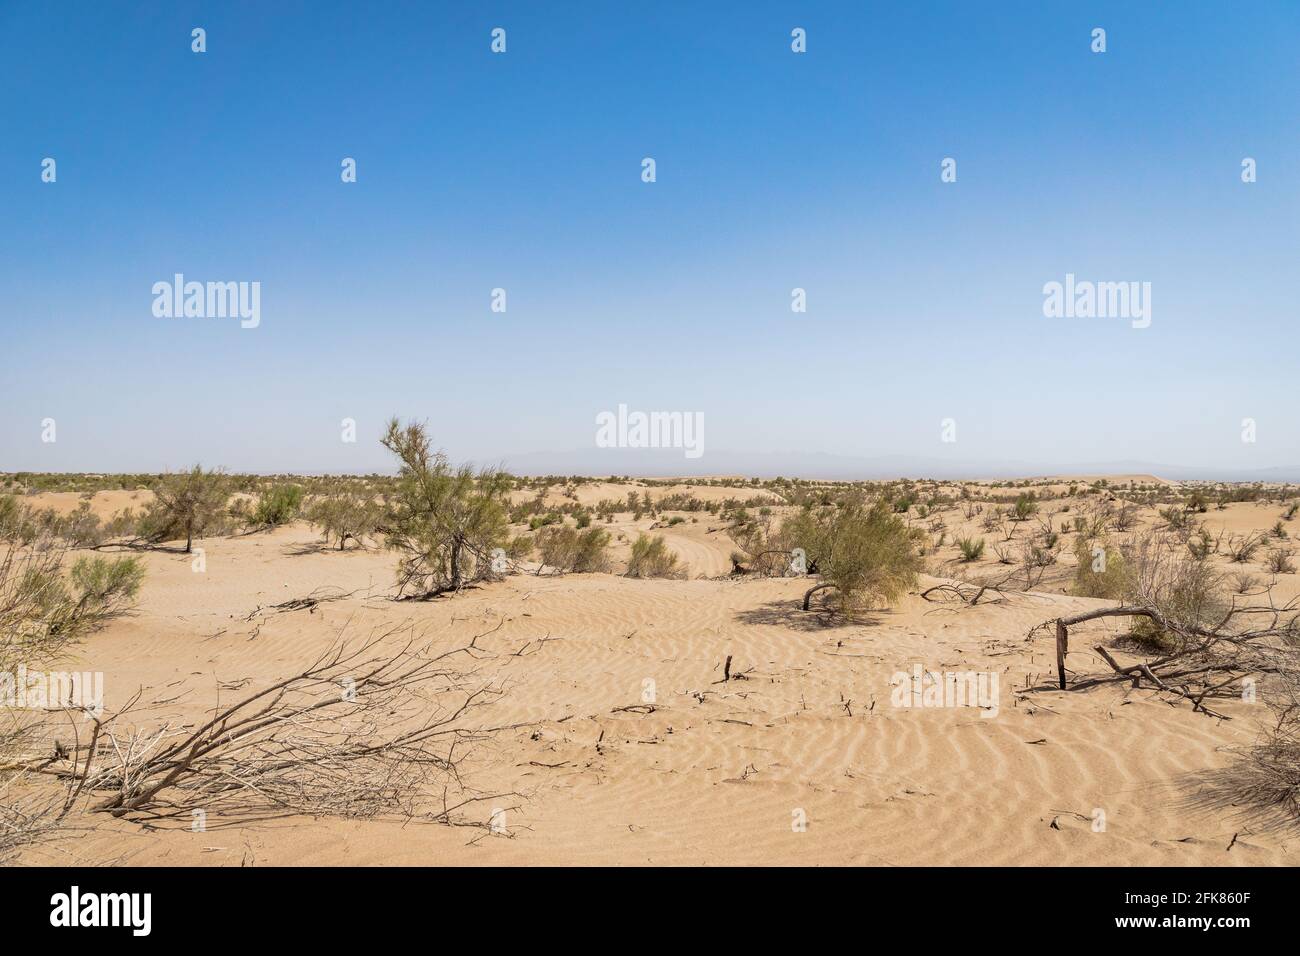 Wüste / Sanddüne Landschaftsansicht bei Yazd im Iran - Wüstenbildung, Klimawandel, Umweltkonzept Bild Stockfoto